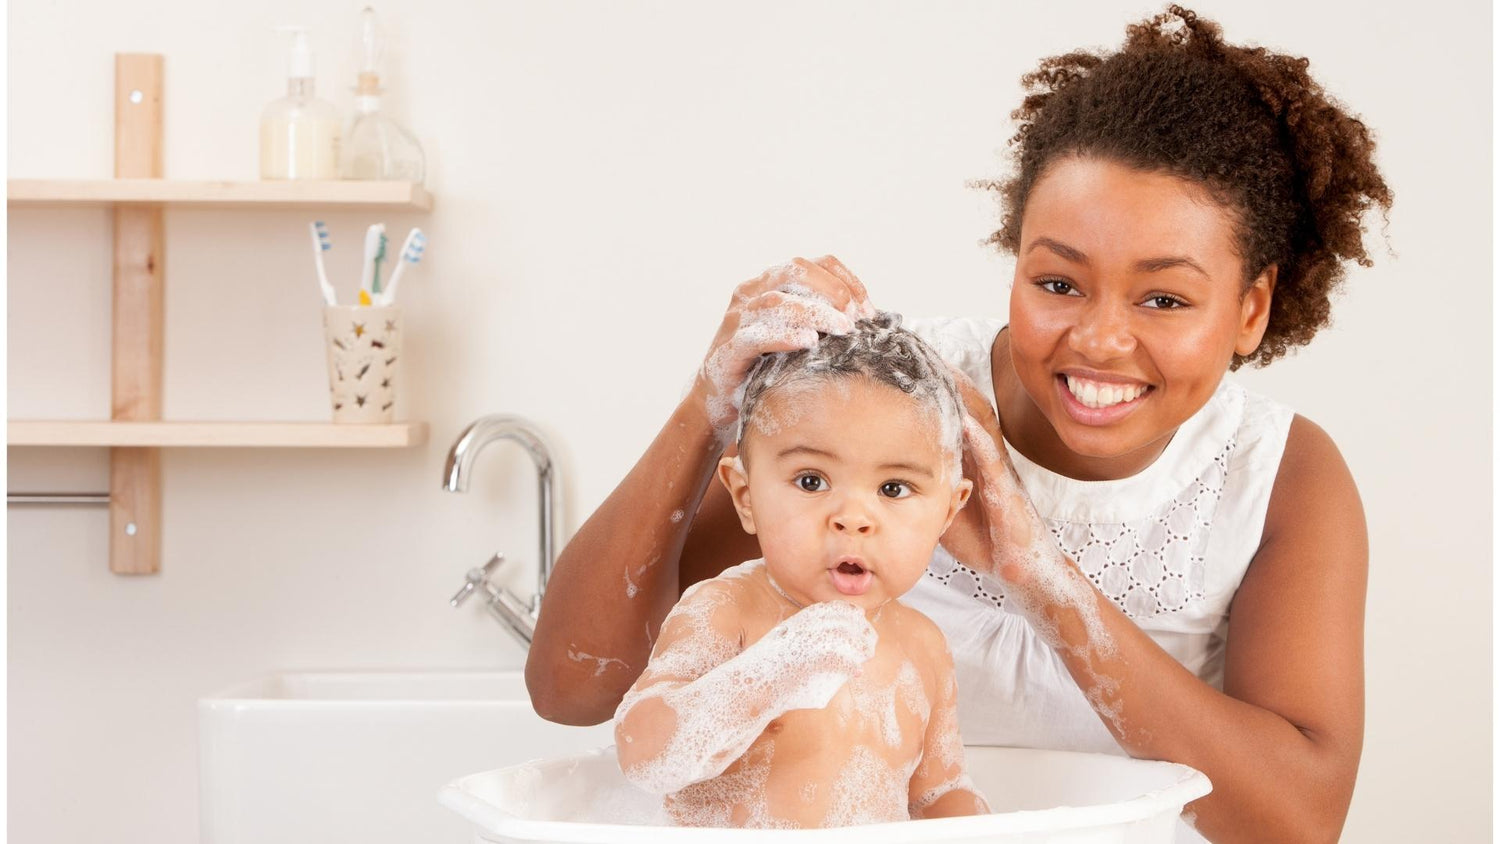 πώς να κάνετε μπάνιο στο μωρό